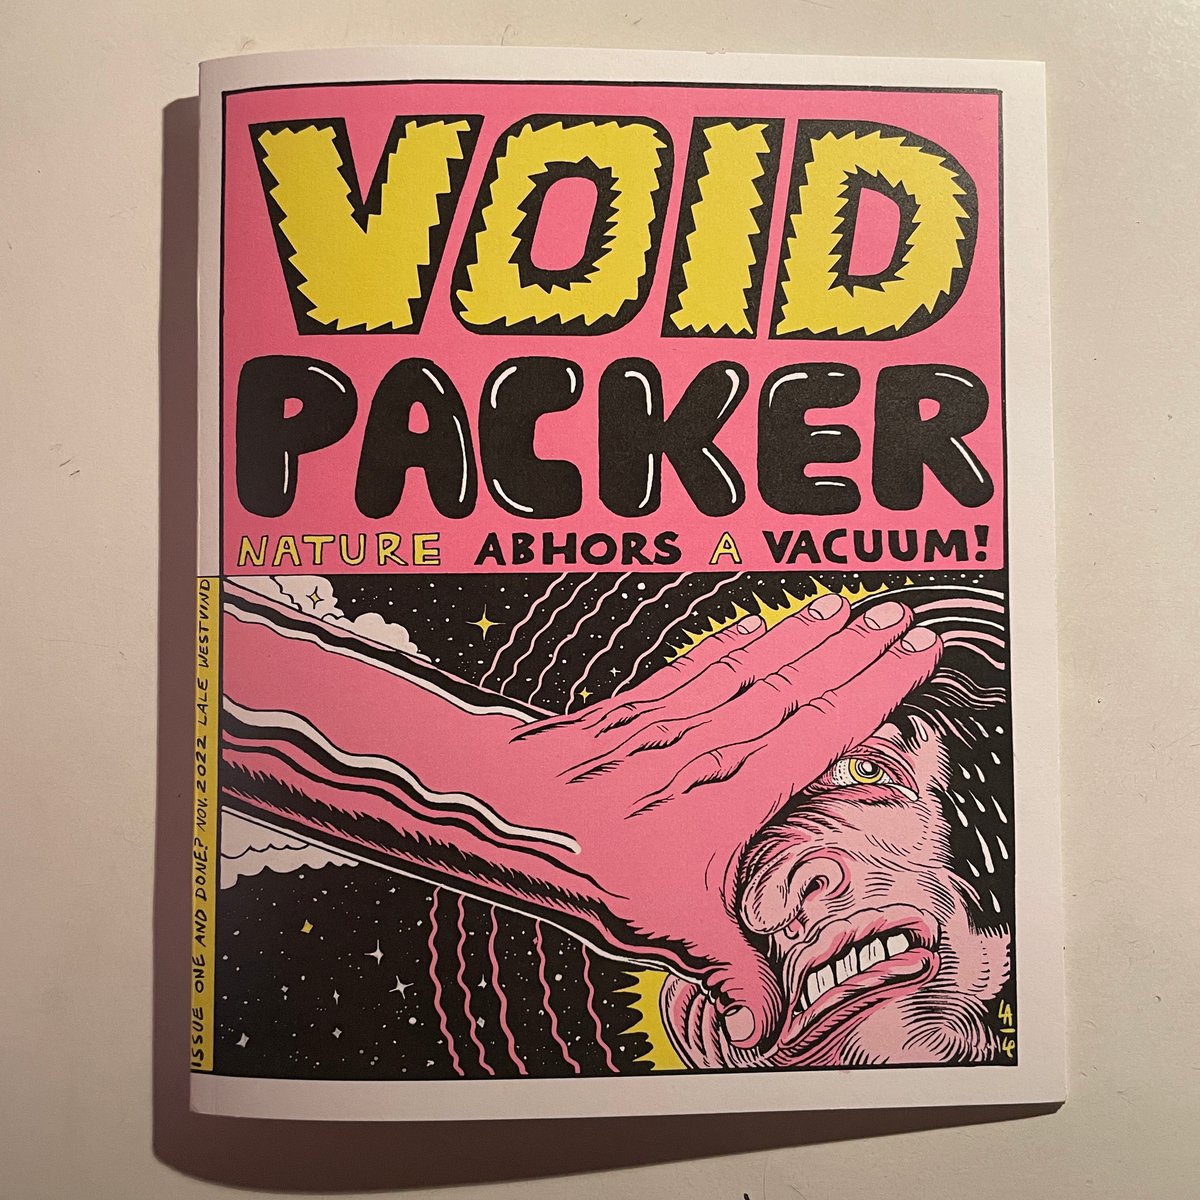 Void Packer #1